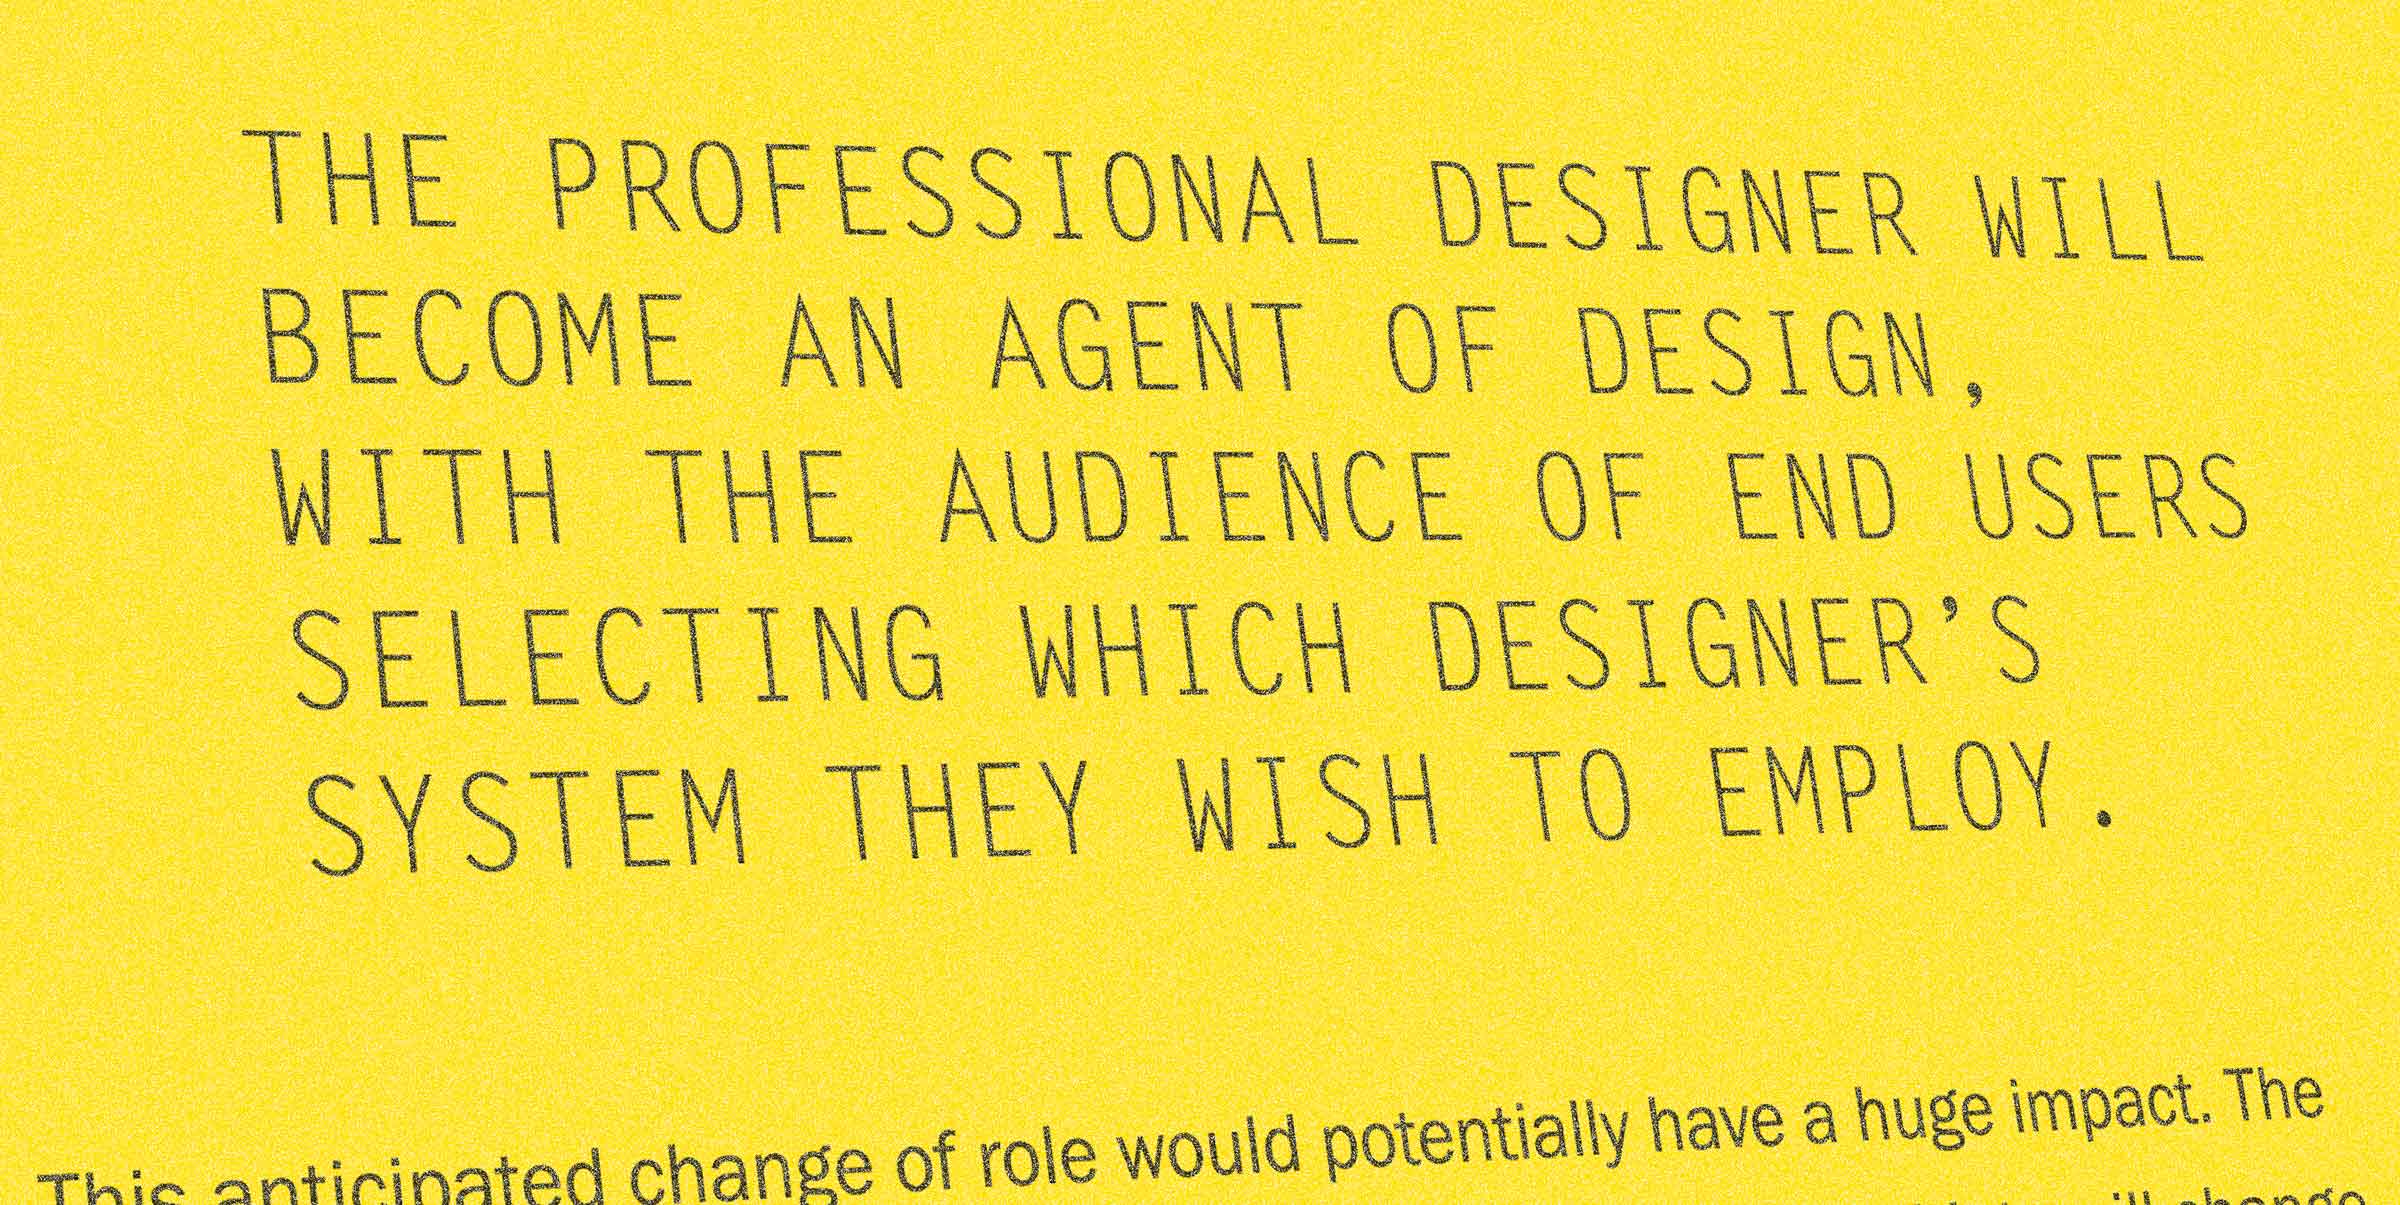 Excerpt from book, Open Design Now